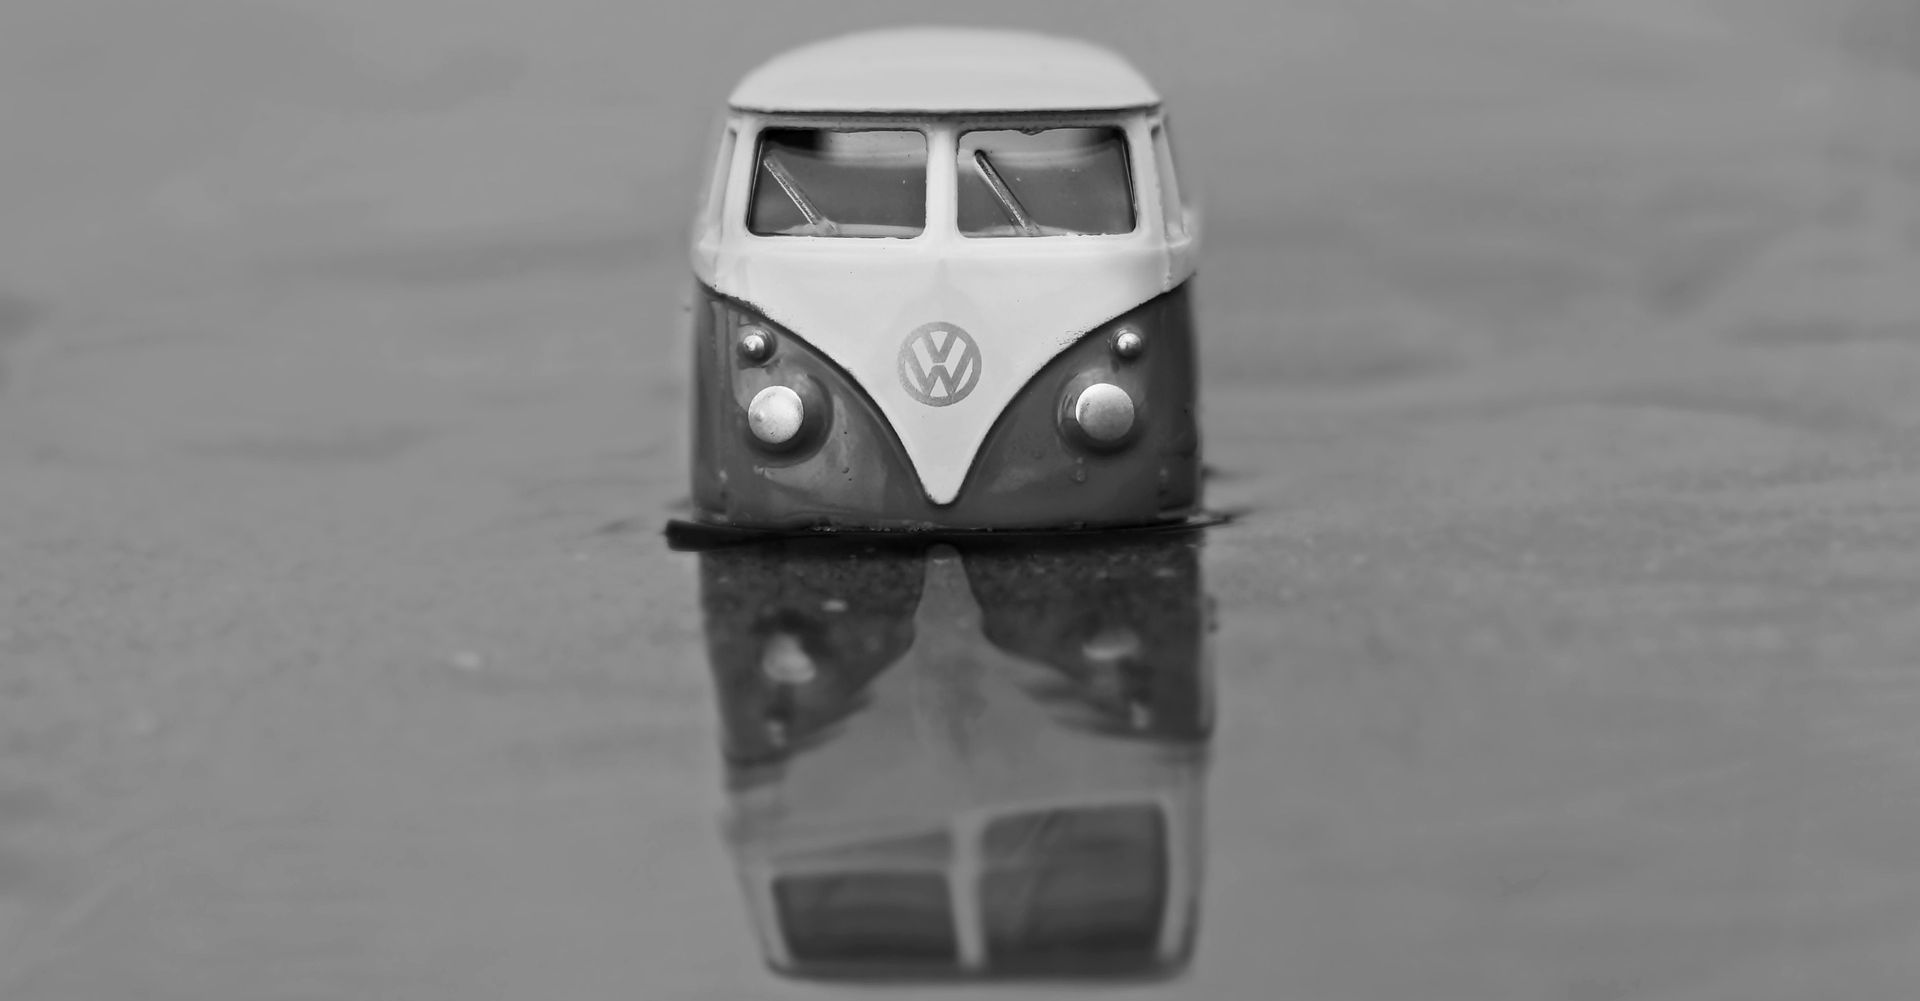 cult vehicle volkswagen minibus standing in water)